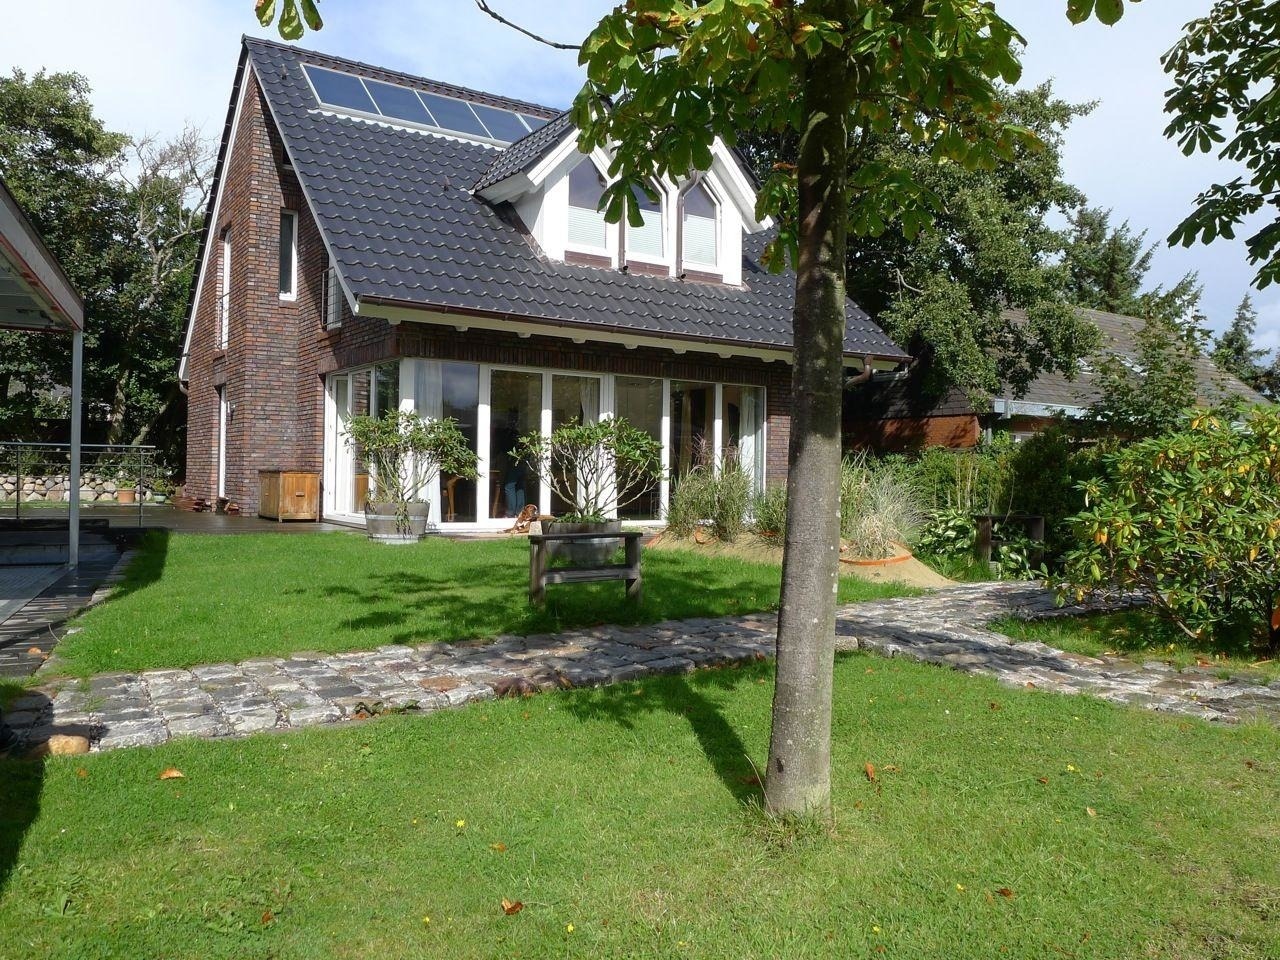 Haus Hookipa, App. 2 Ferienwohnung in Schleswig Holstein